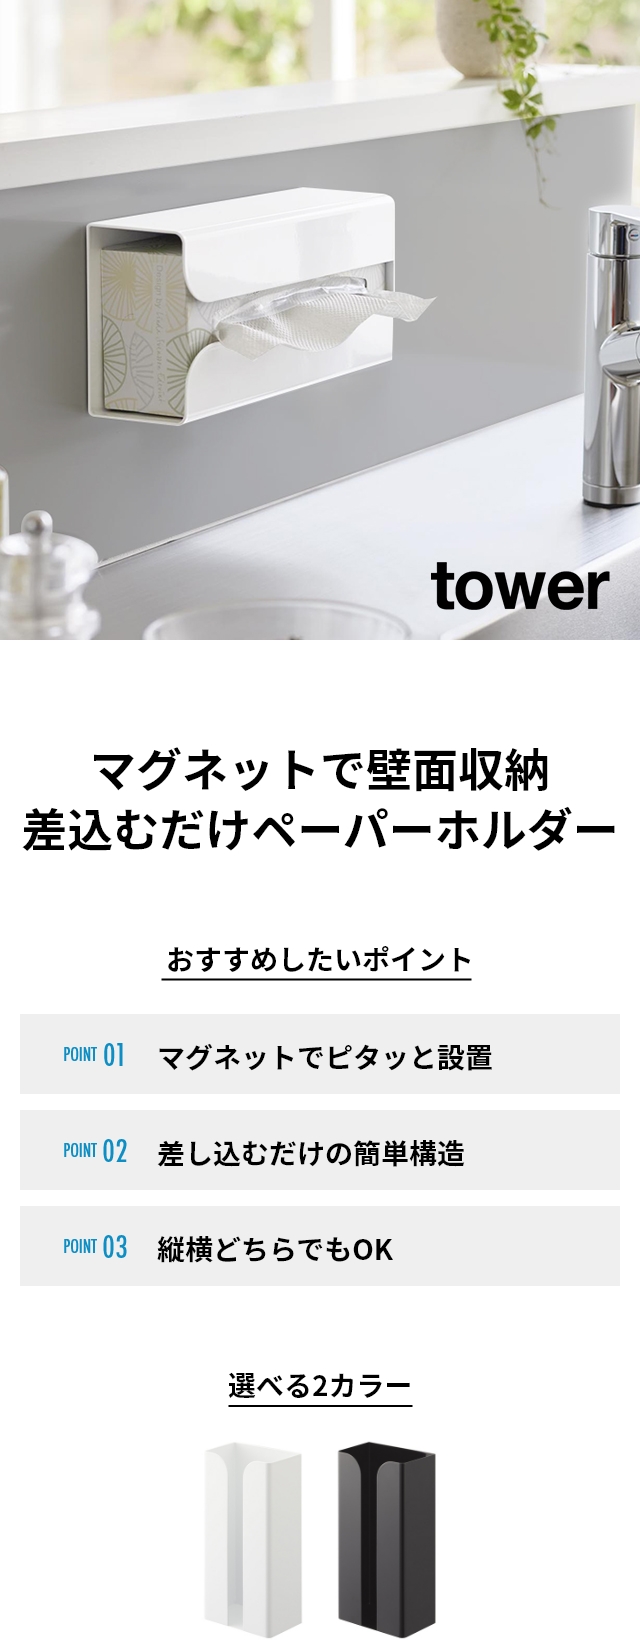 tower (タワー) マグネットポリ袋&キッチンペーパーホルダー